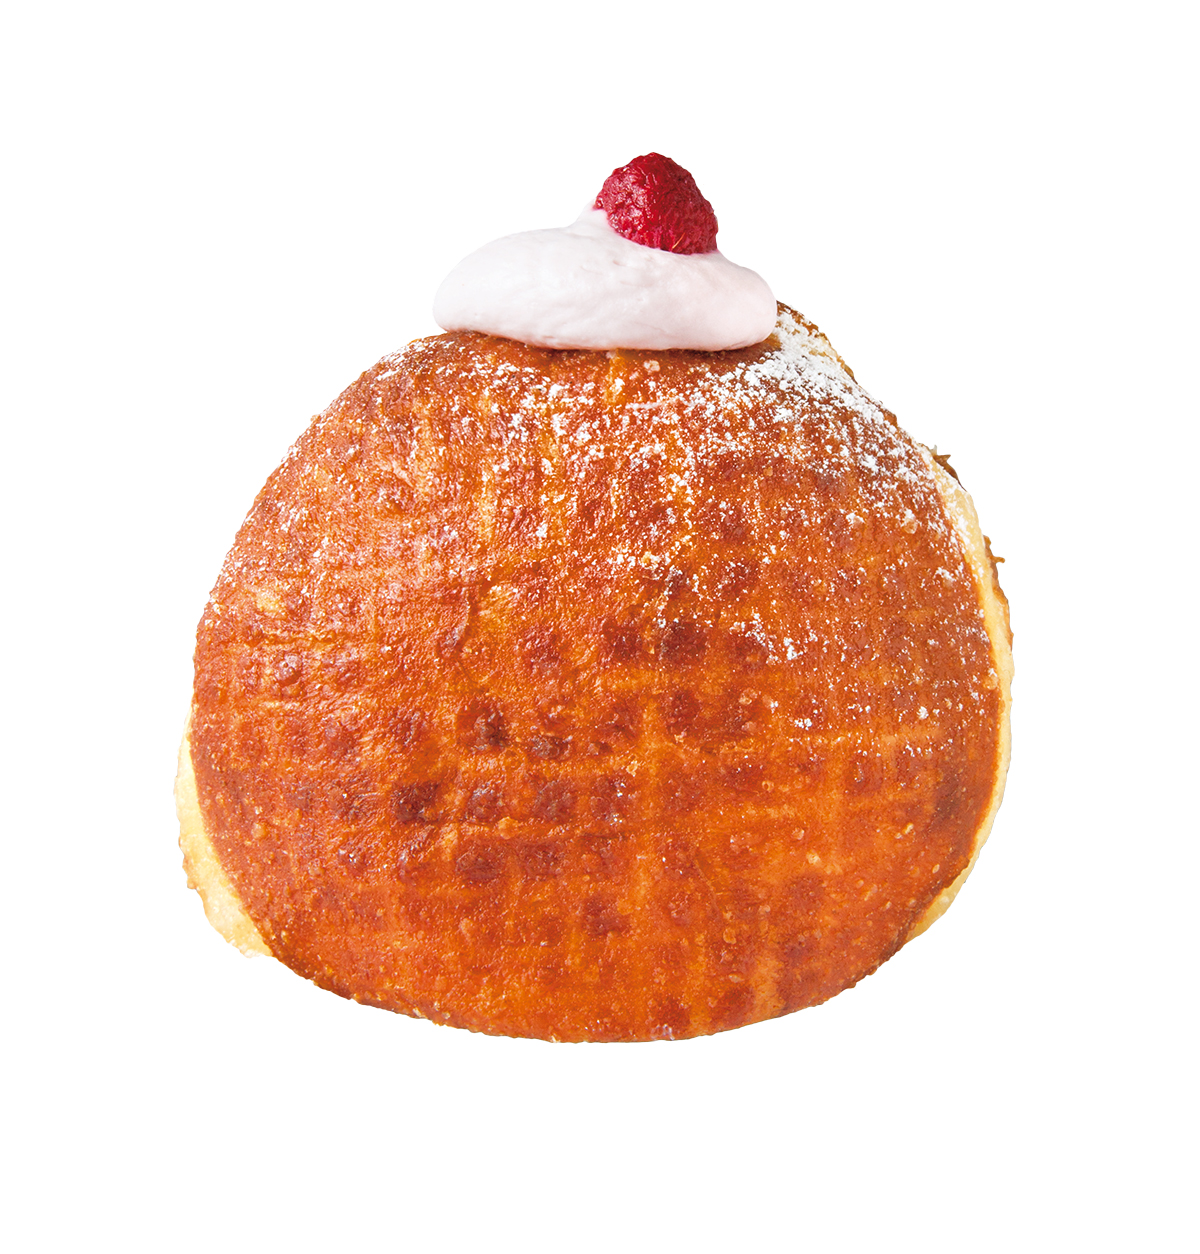 『I'm donut?（アイムドーナツ）』<br />
framboise（フランボワーズ）421円<br />
フランボワーズは、甘酸っぱいフランボワーズクリームに、クリームチーズの風味で味わいが広がる